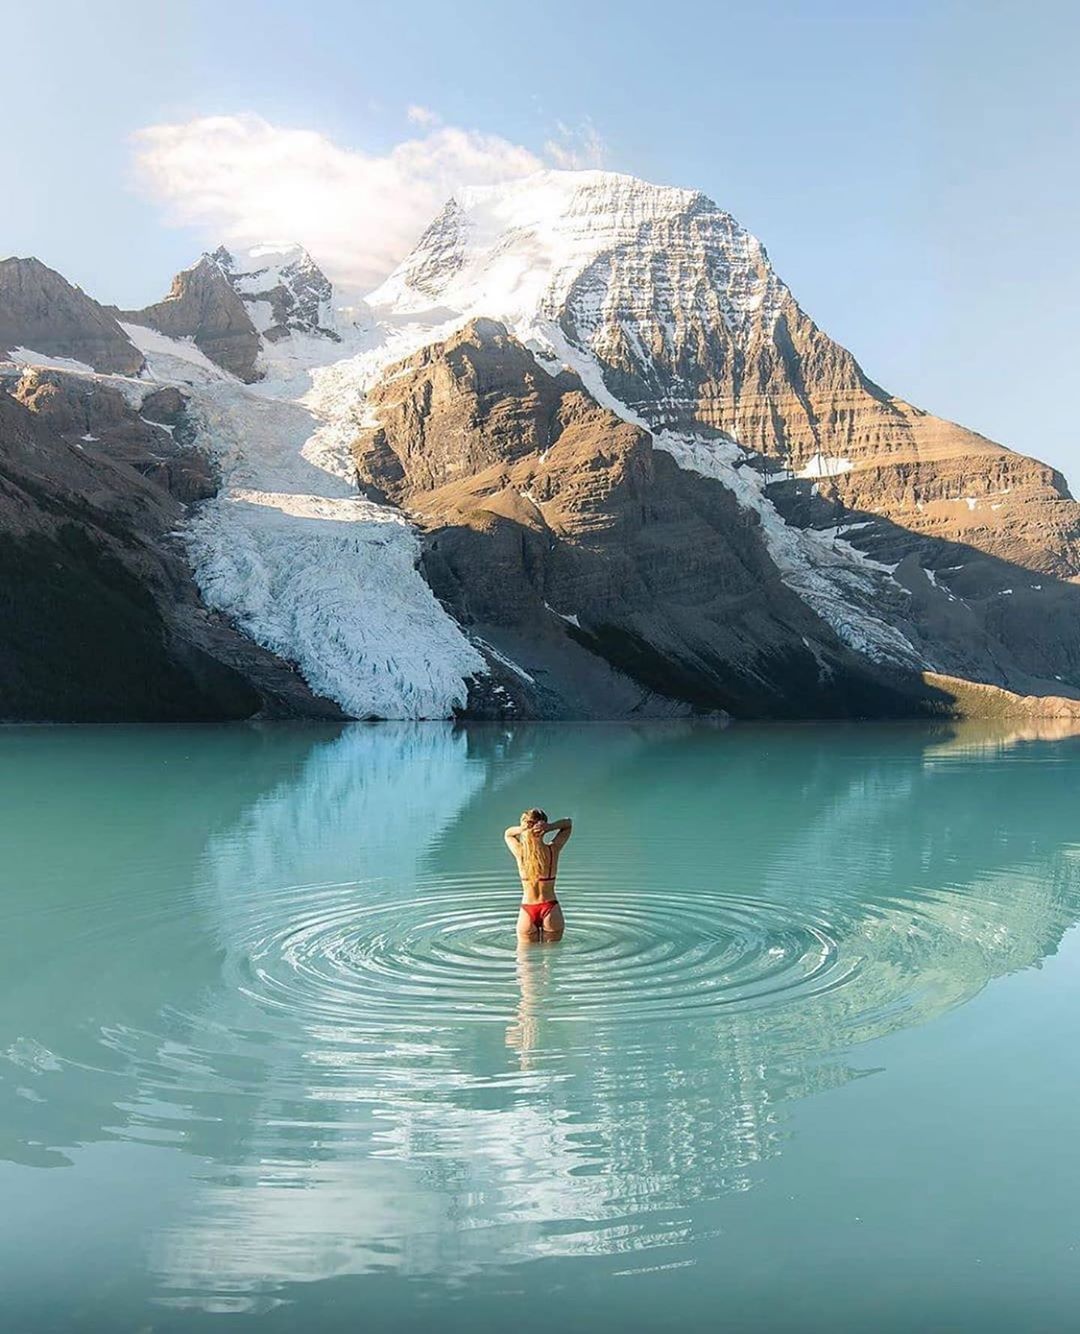 АльпИндустрия • Болеем горами - Купались в этом году в горном озере? 🏞 

📸 @angelaliggs 

#alpindustria #outdoor #outdoors #mount #mountains #mountain #mountainlovers #mountlake #lake #laketime #kanad...